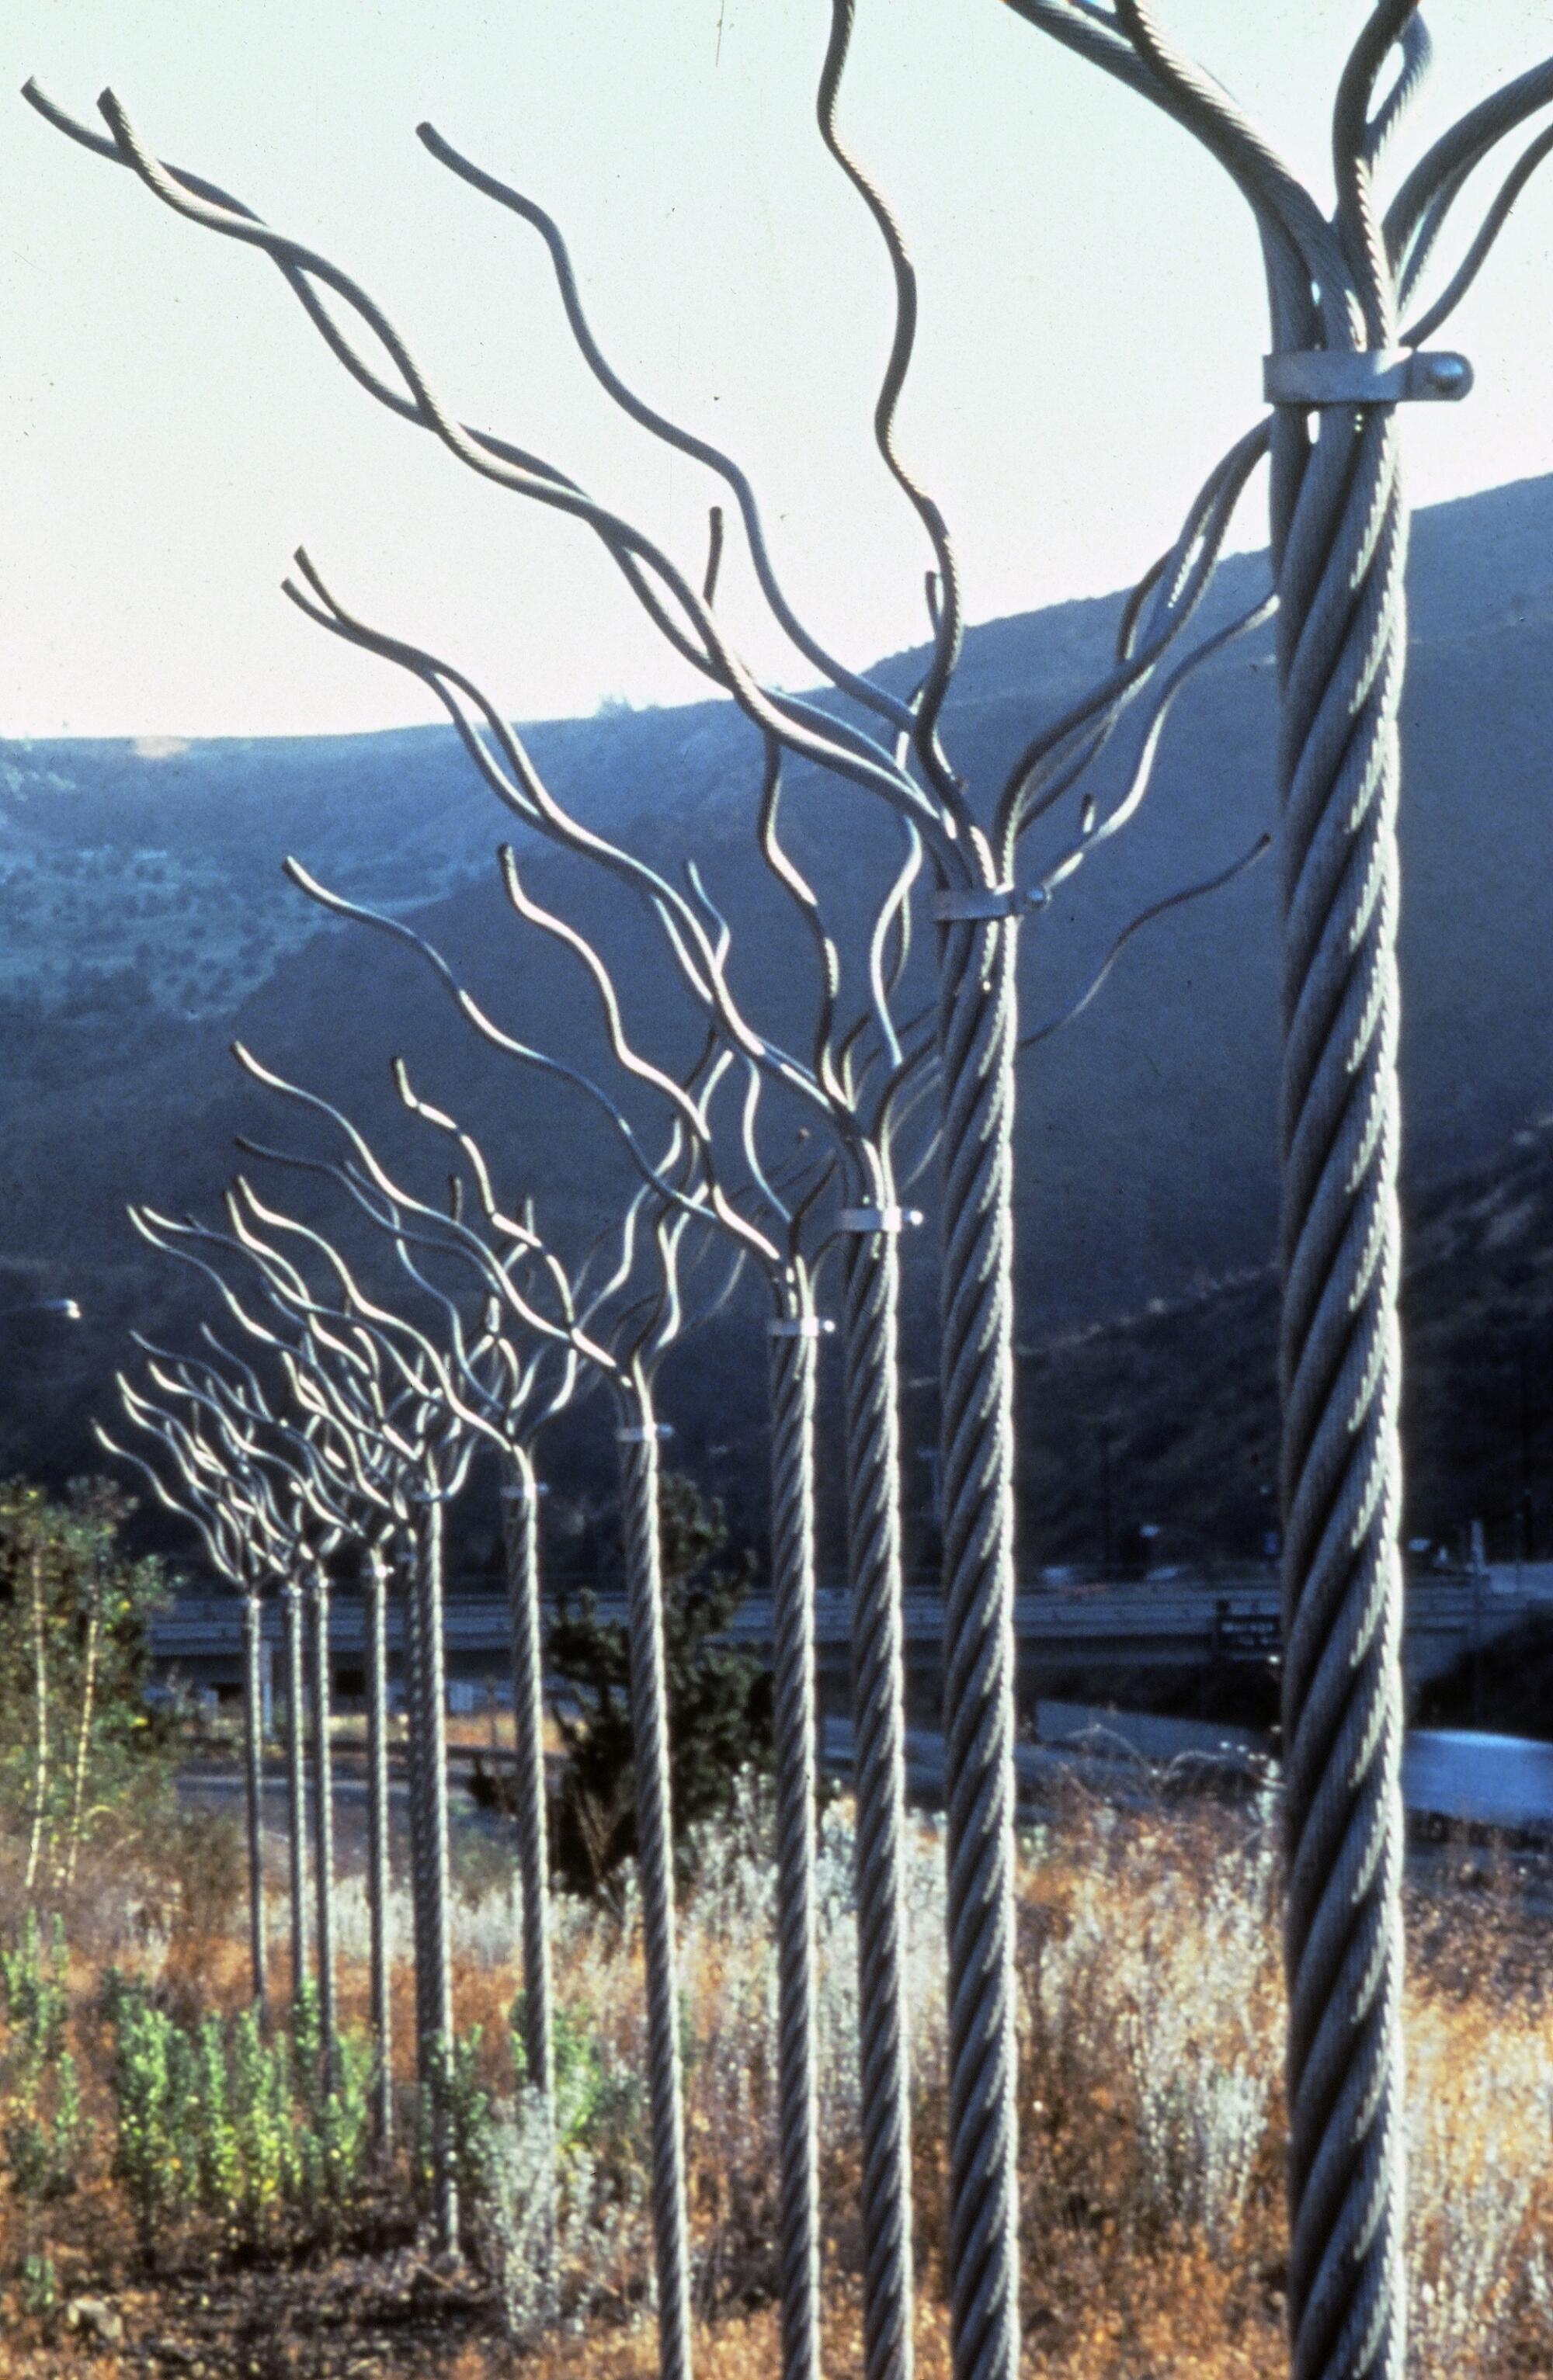 Maren Hassinger‘s “Twelve Trees” (1979) installed along the Los Angeles highway